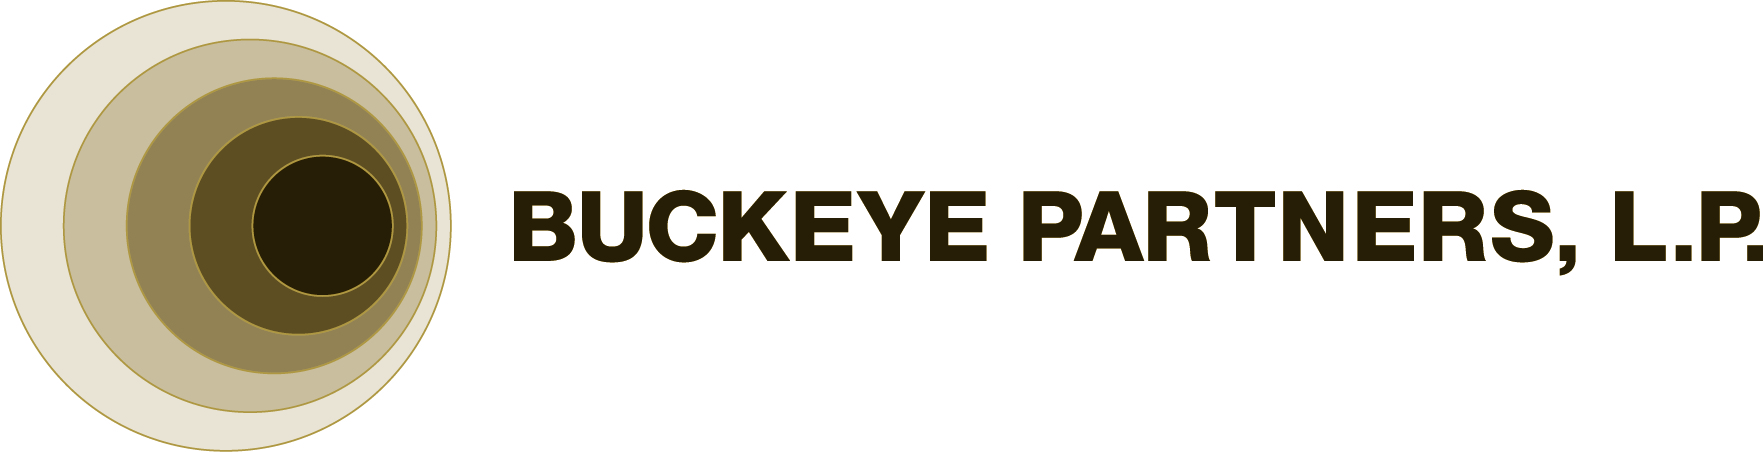 orter_logos/buckeye_Partners_2C_Large company logo